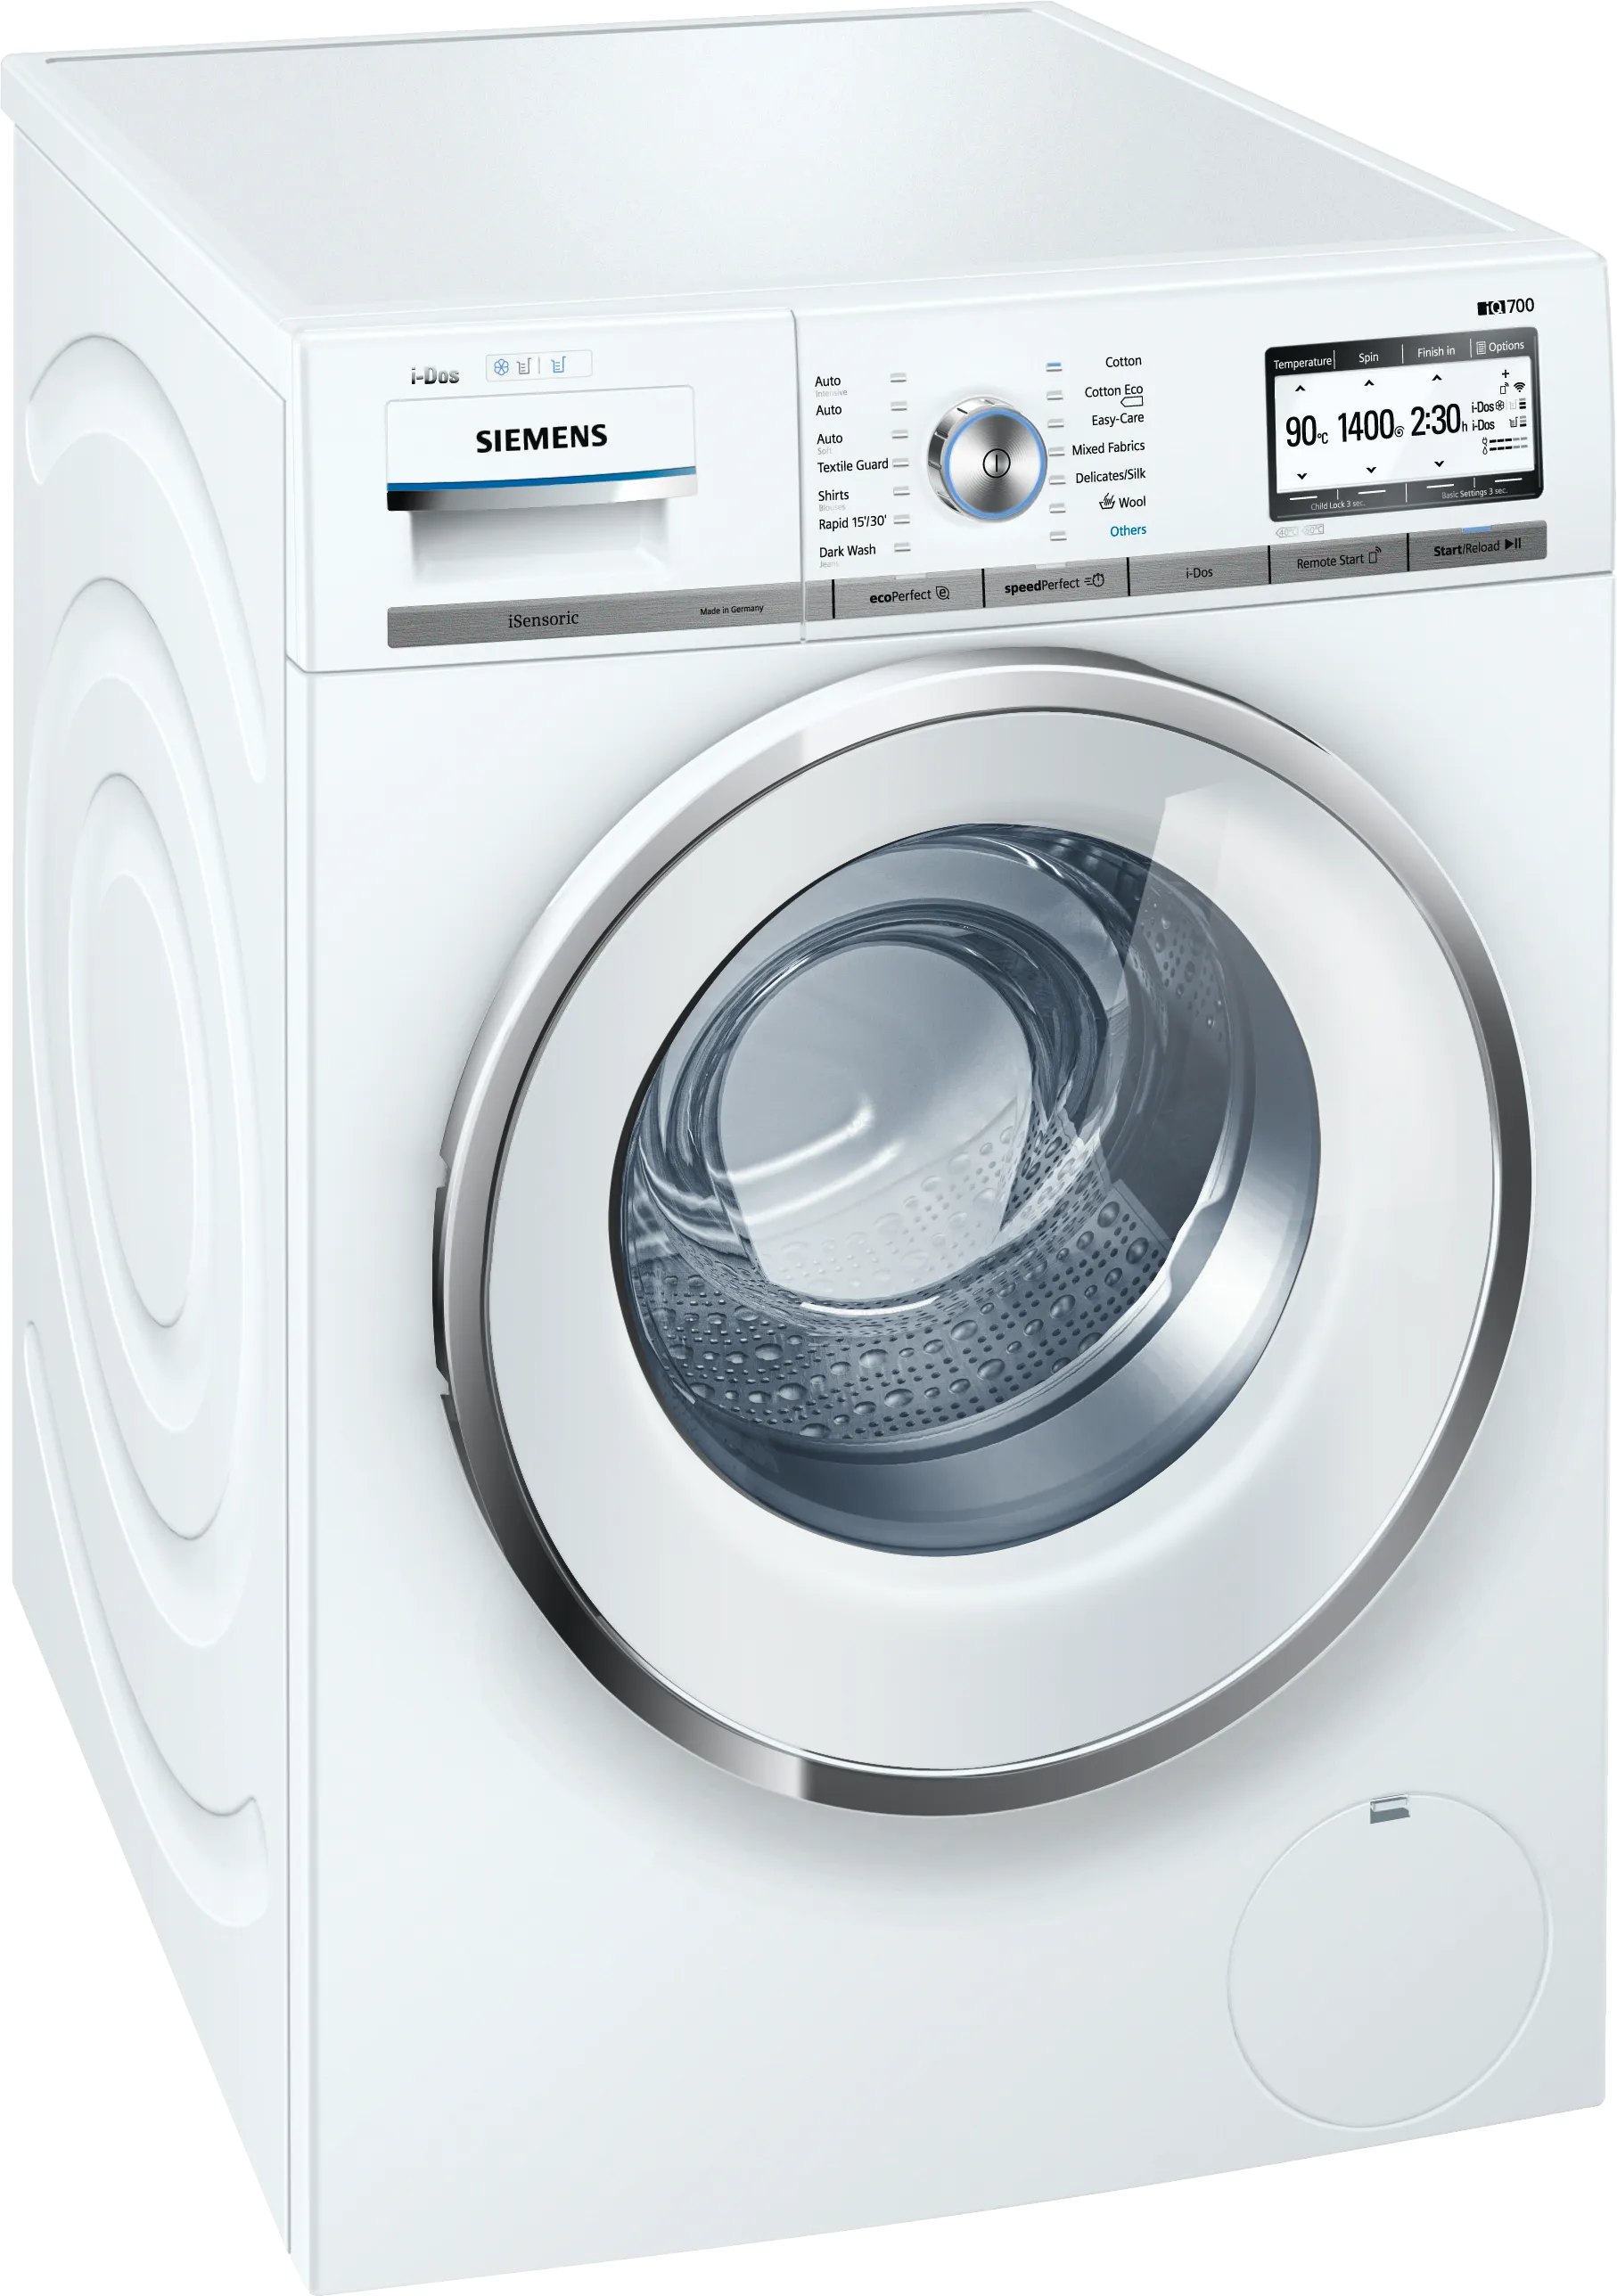 IQ700 Washing machine, front loader 9 kg 1400 rpm 